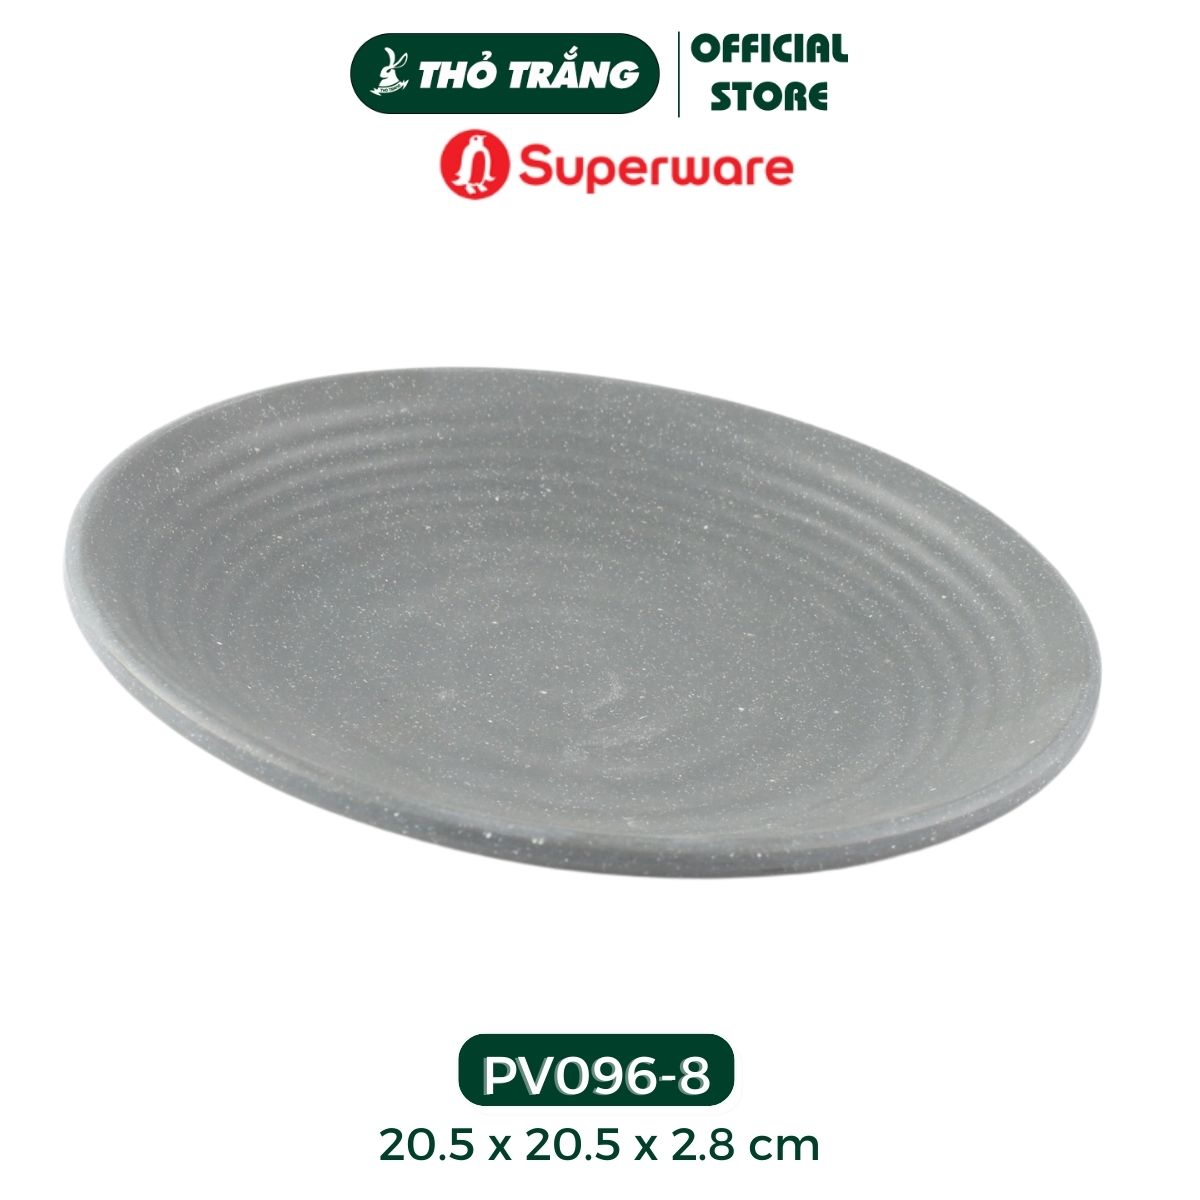 Dĩa tròn dày nhựa Melamine màu xams nhám thương hiệu Superware